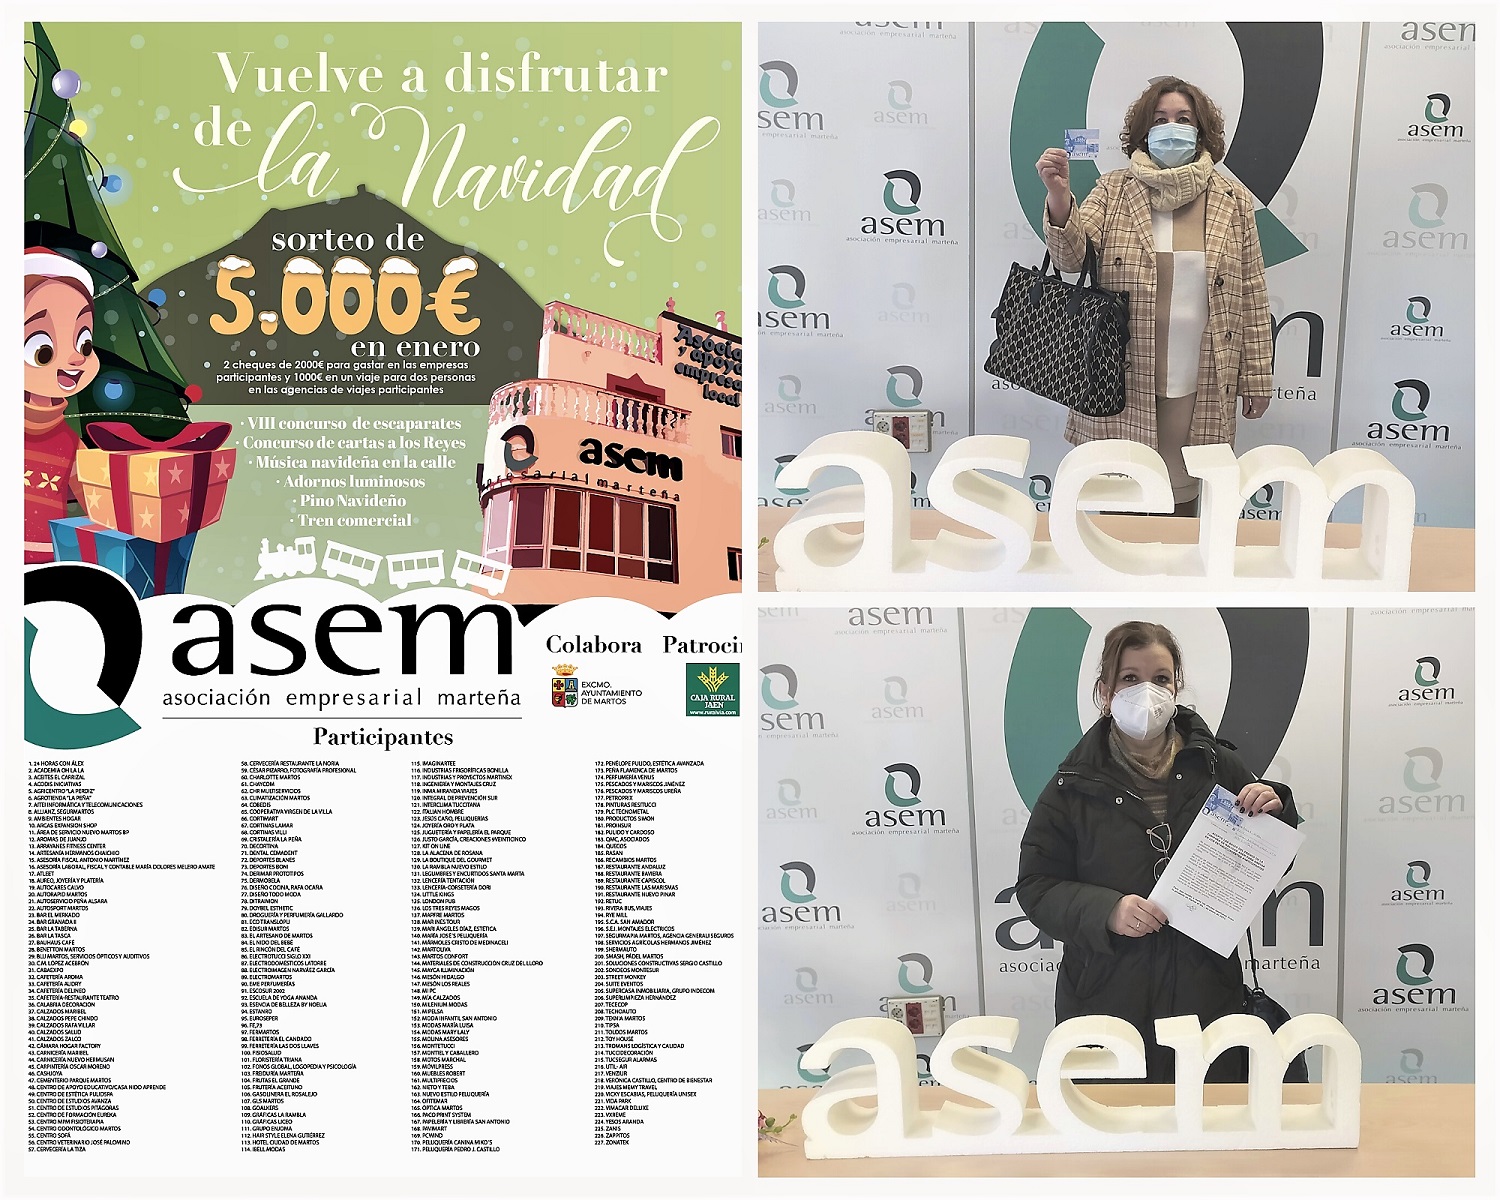 Finaliza el plazo para reclamar el premio de 2000€ de la Campaña de Navidad de ASEM